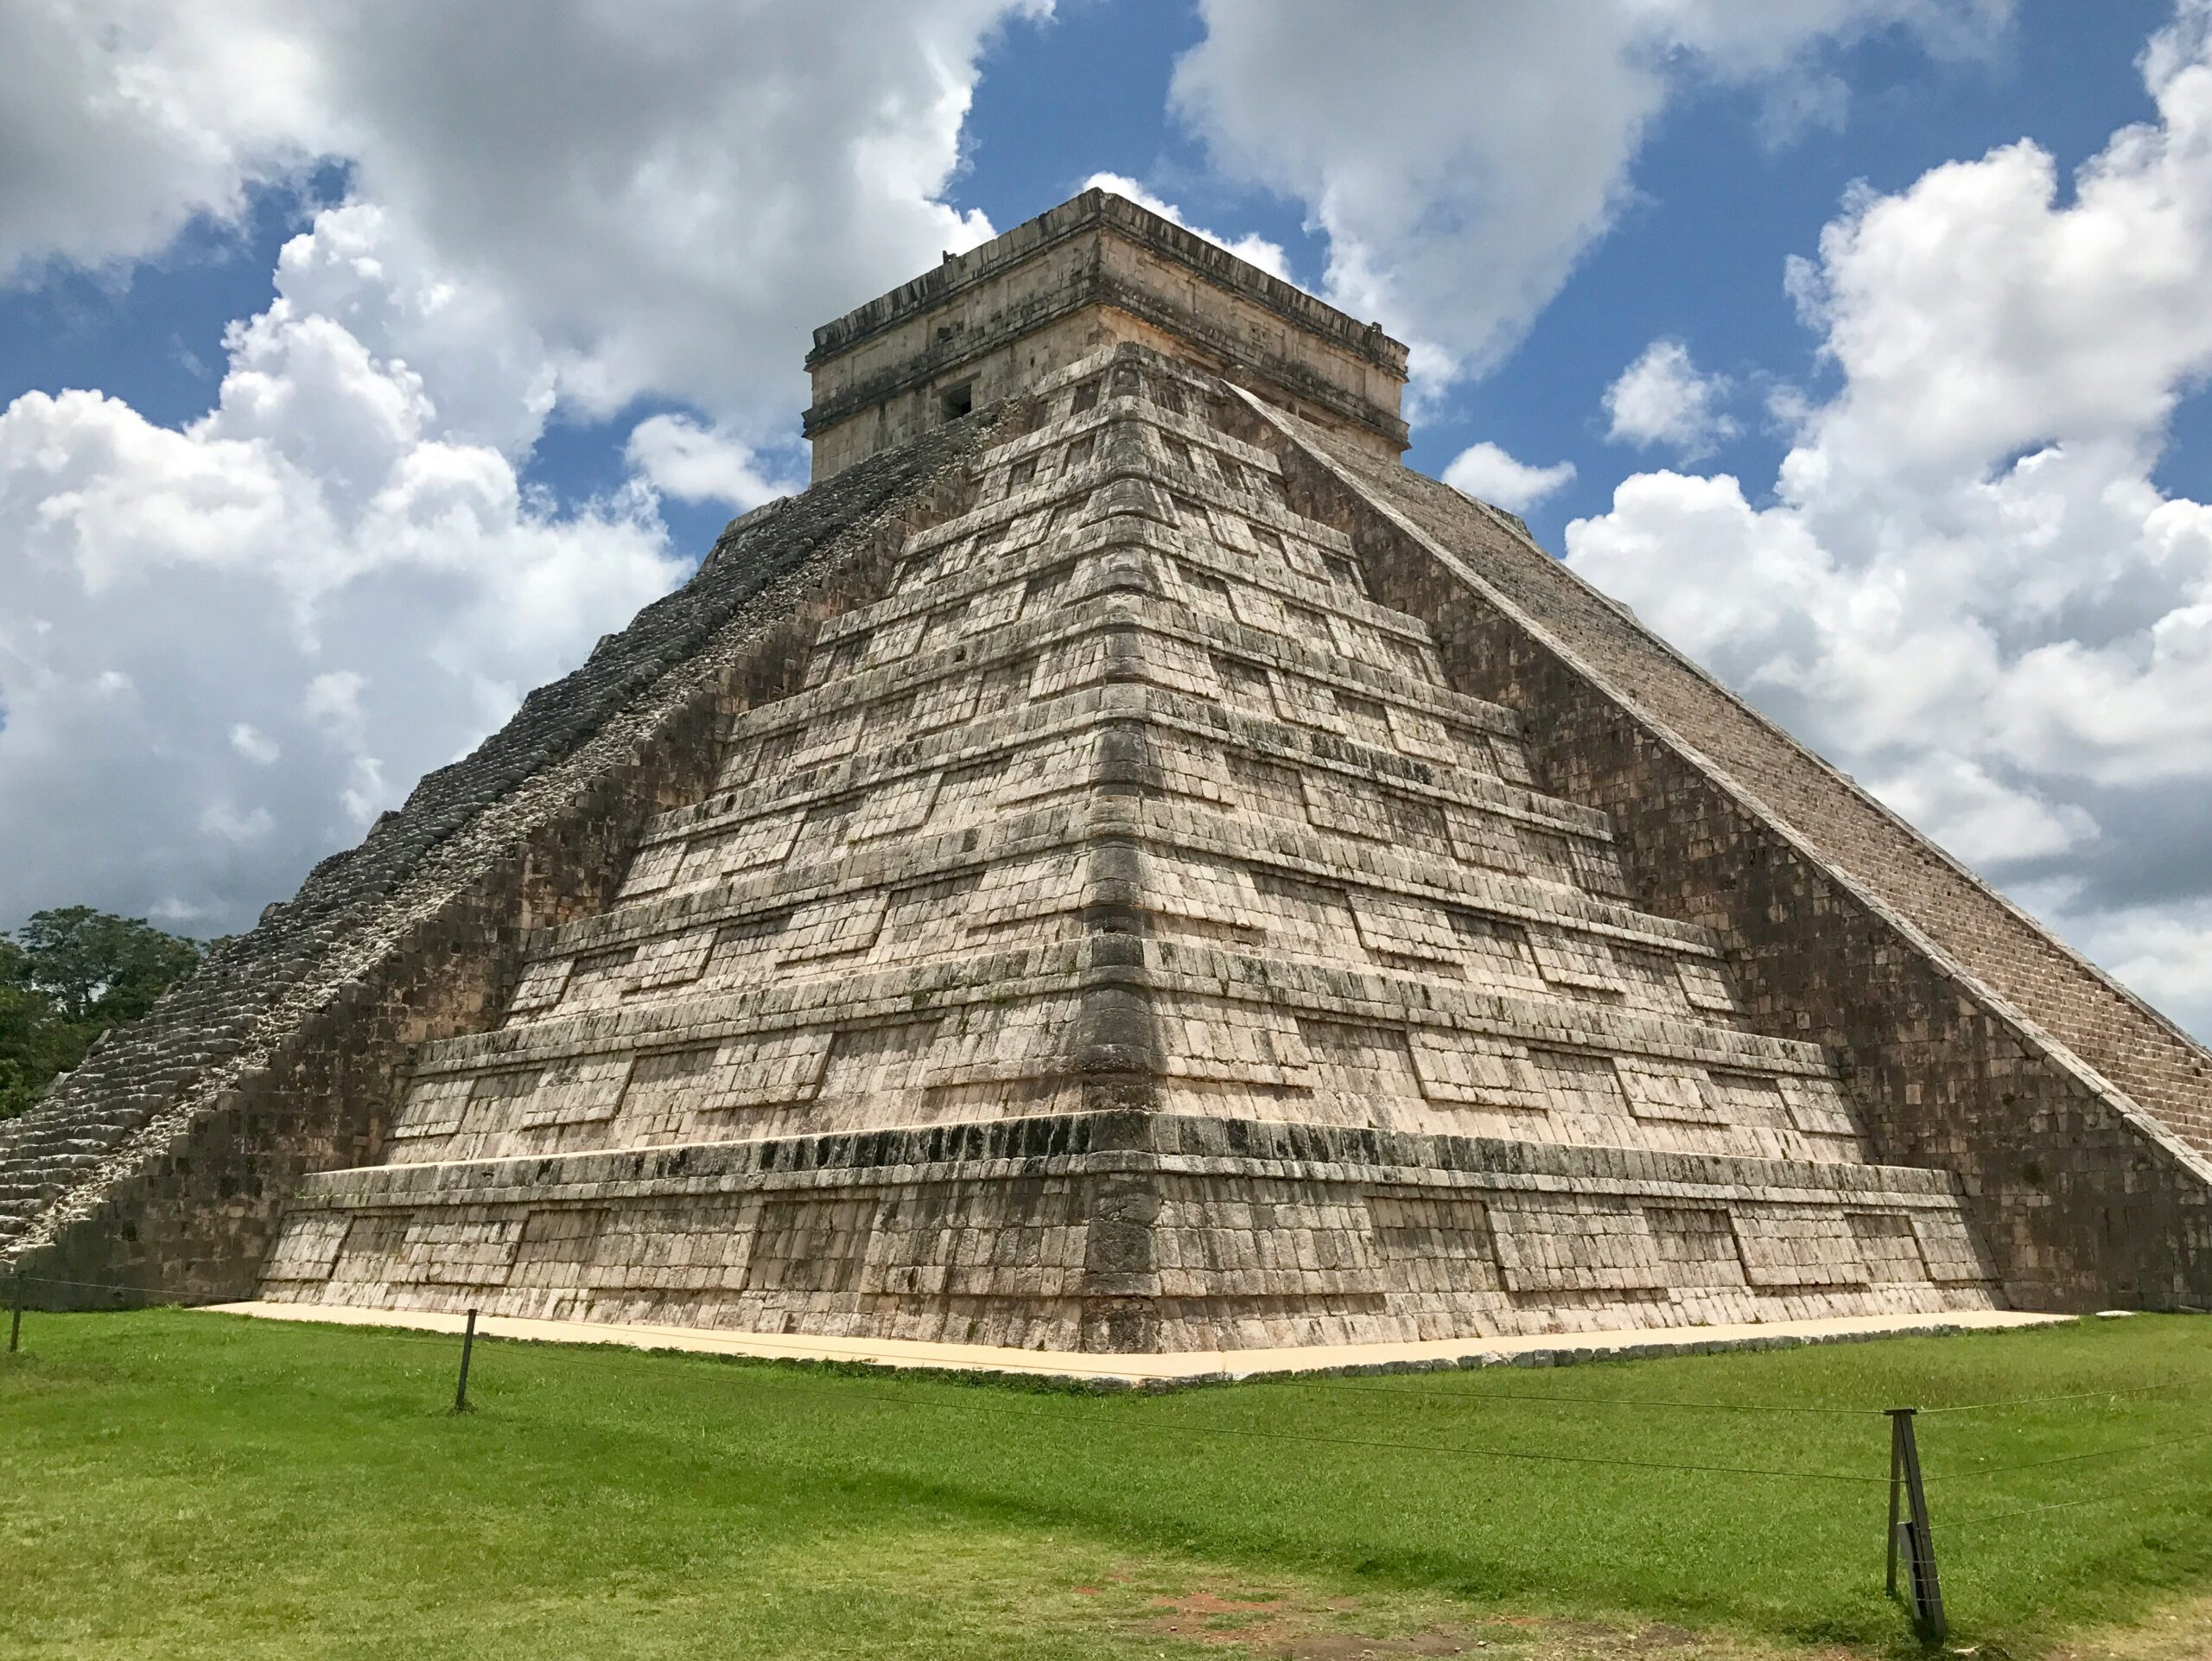 Meksyk - wyjazdy grupowe incentive travel Grupowe